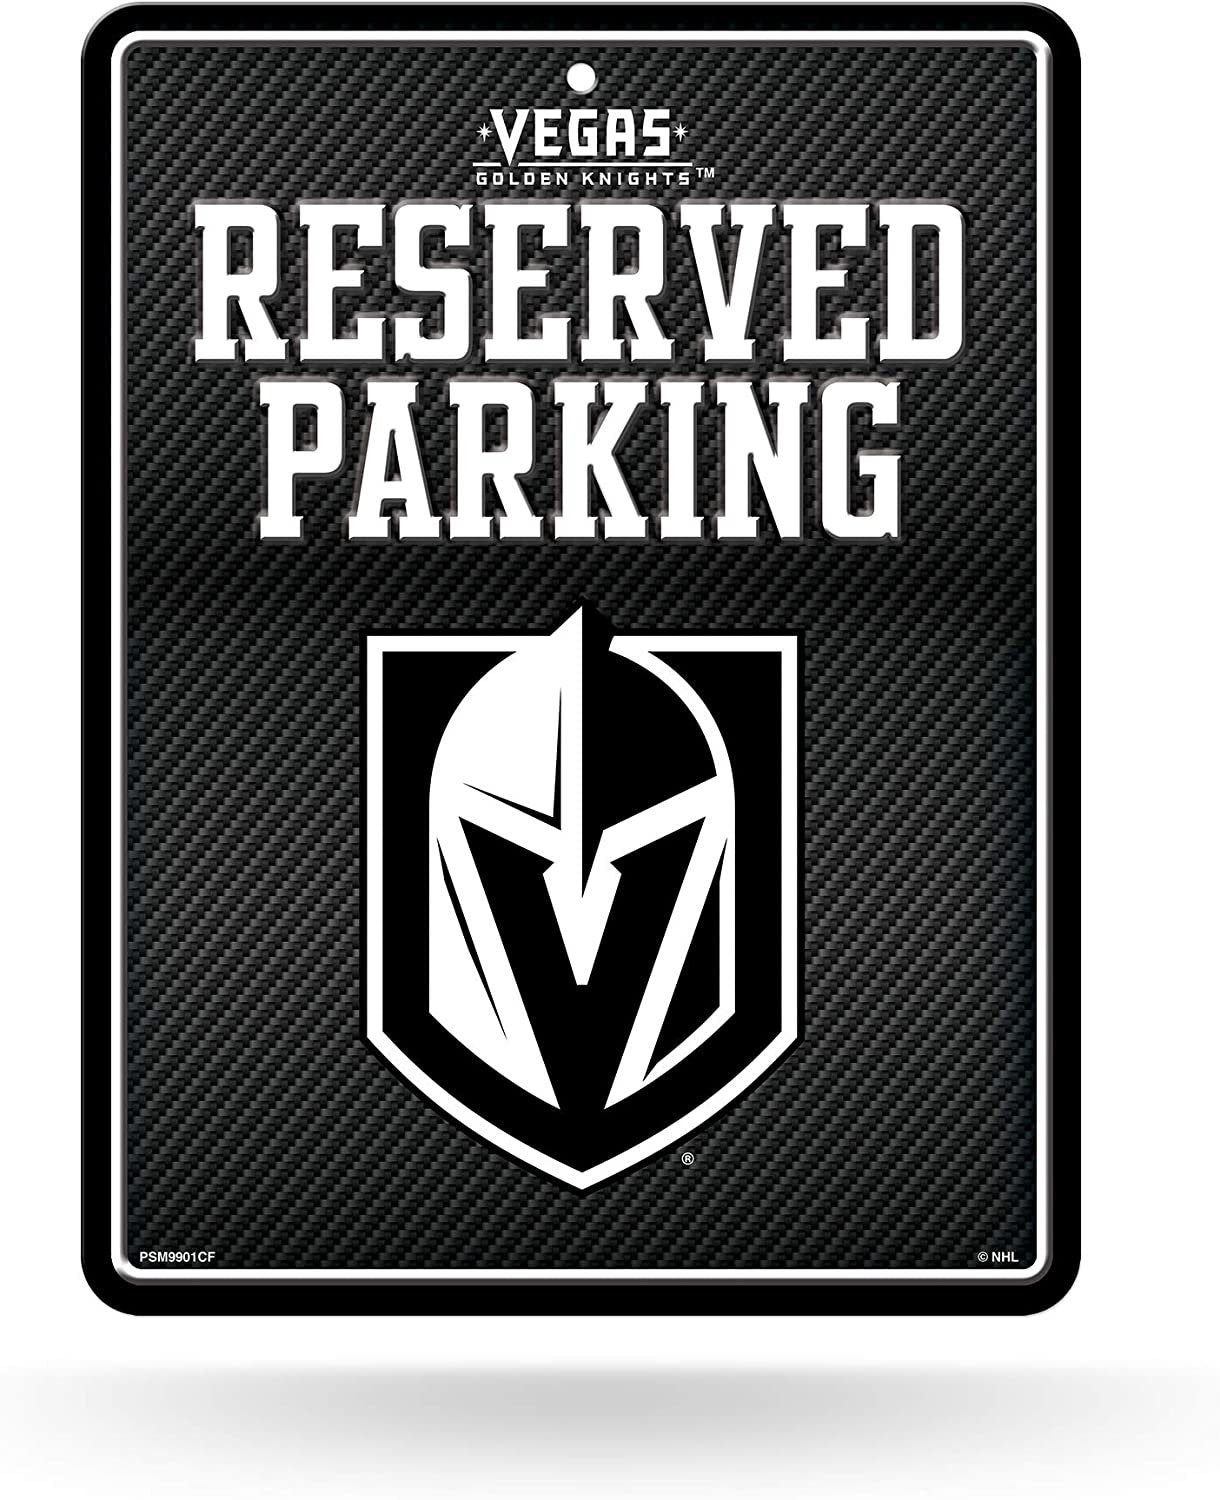 Vegas Golden Knights Metal Parking Novelty Wall Sign 8.5 x 11 Inch Carbon Fiber Design